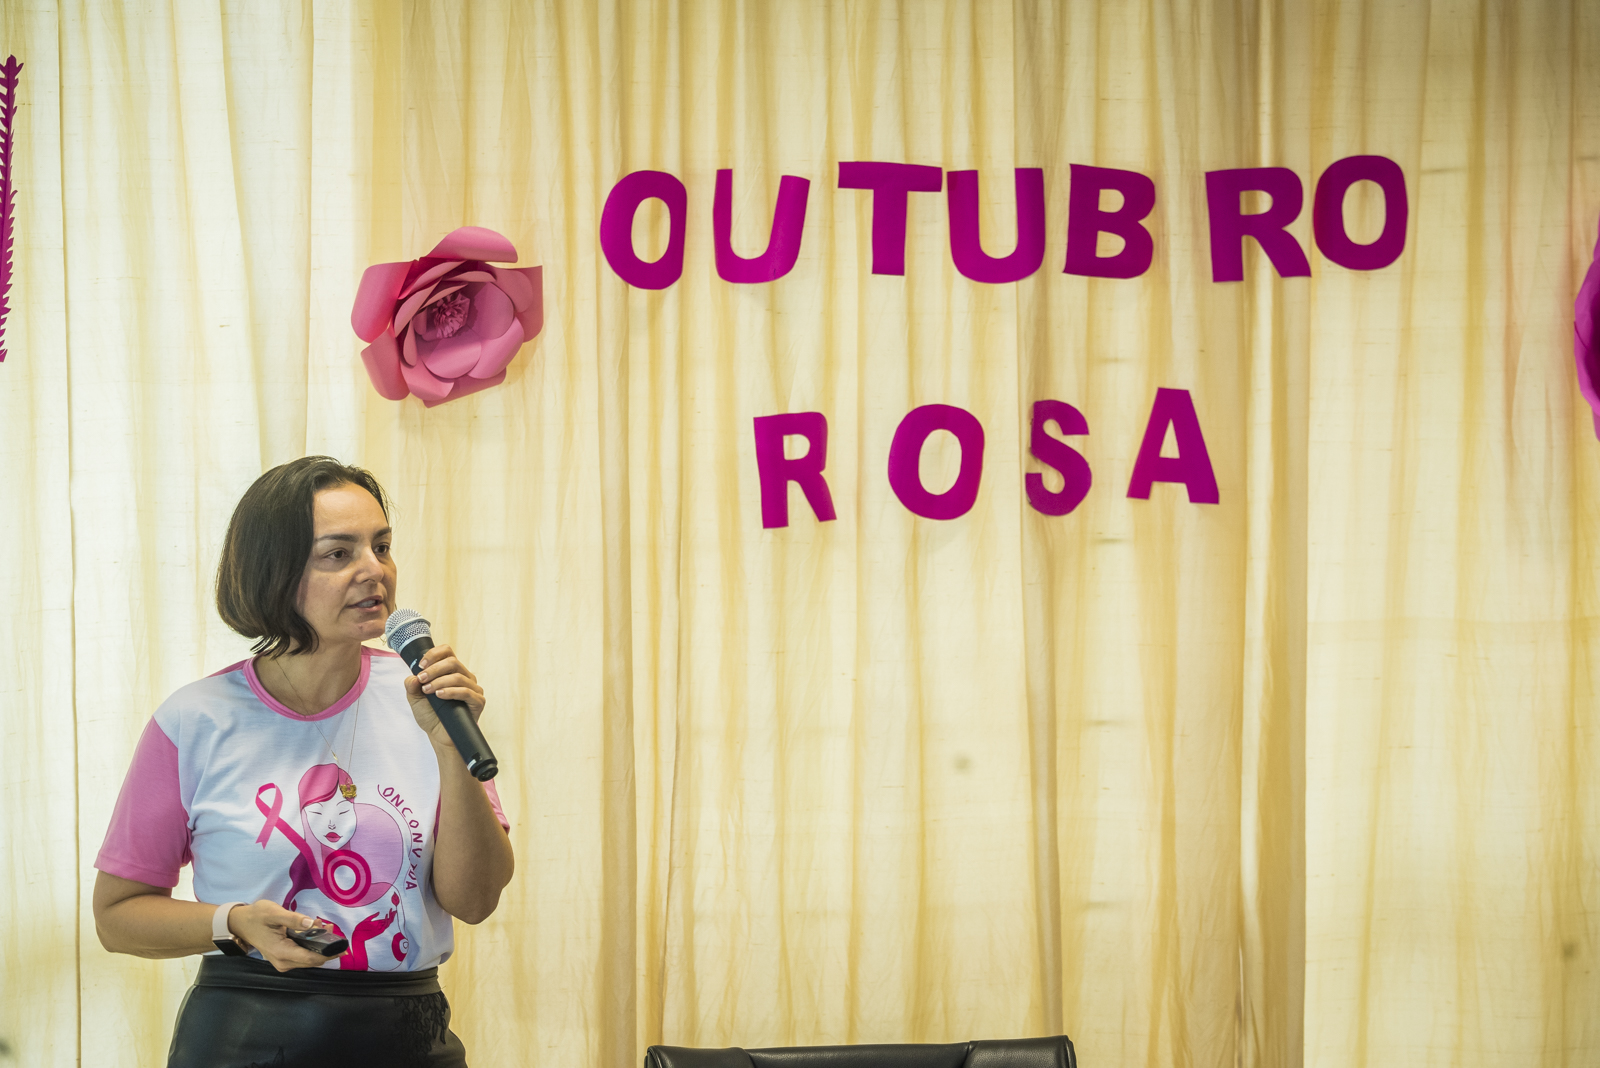 Diretoria de Saúde e Gedema promovem palestras alusivas à campanha “Outubro Rosa”